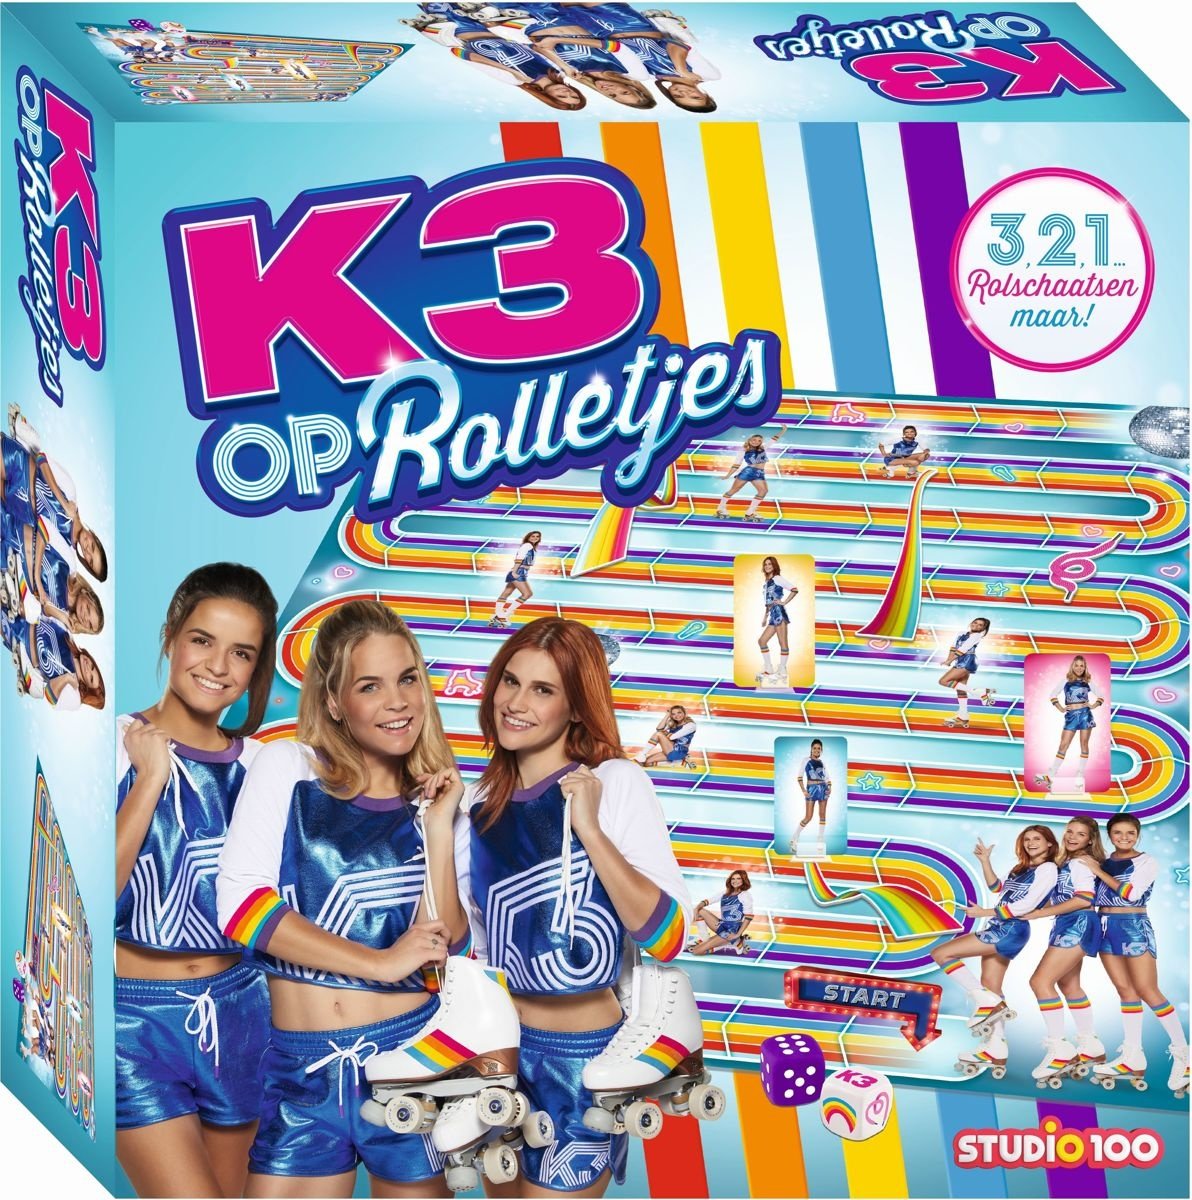 K3 : spel - op rolletjes